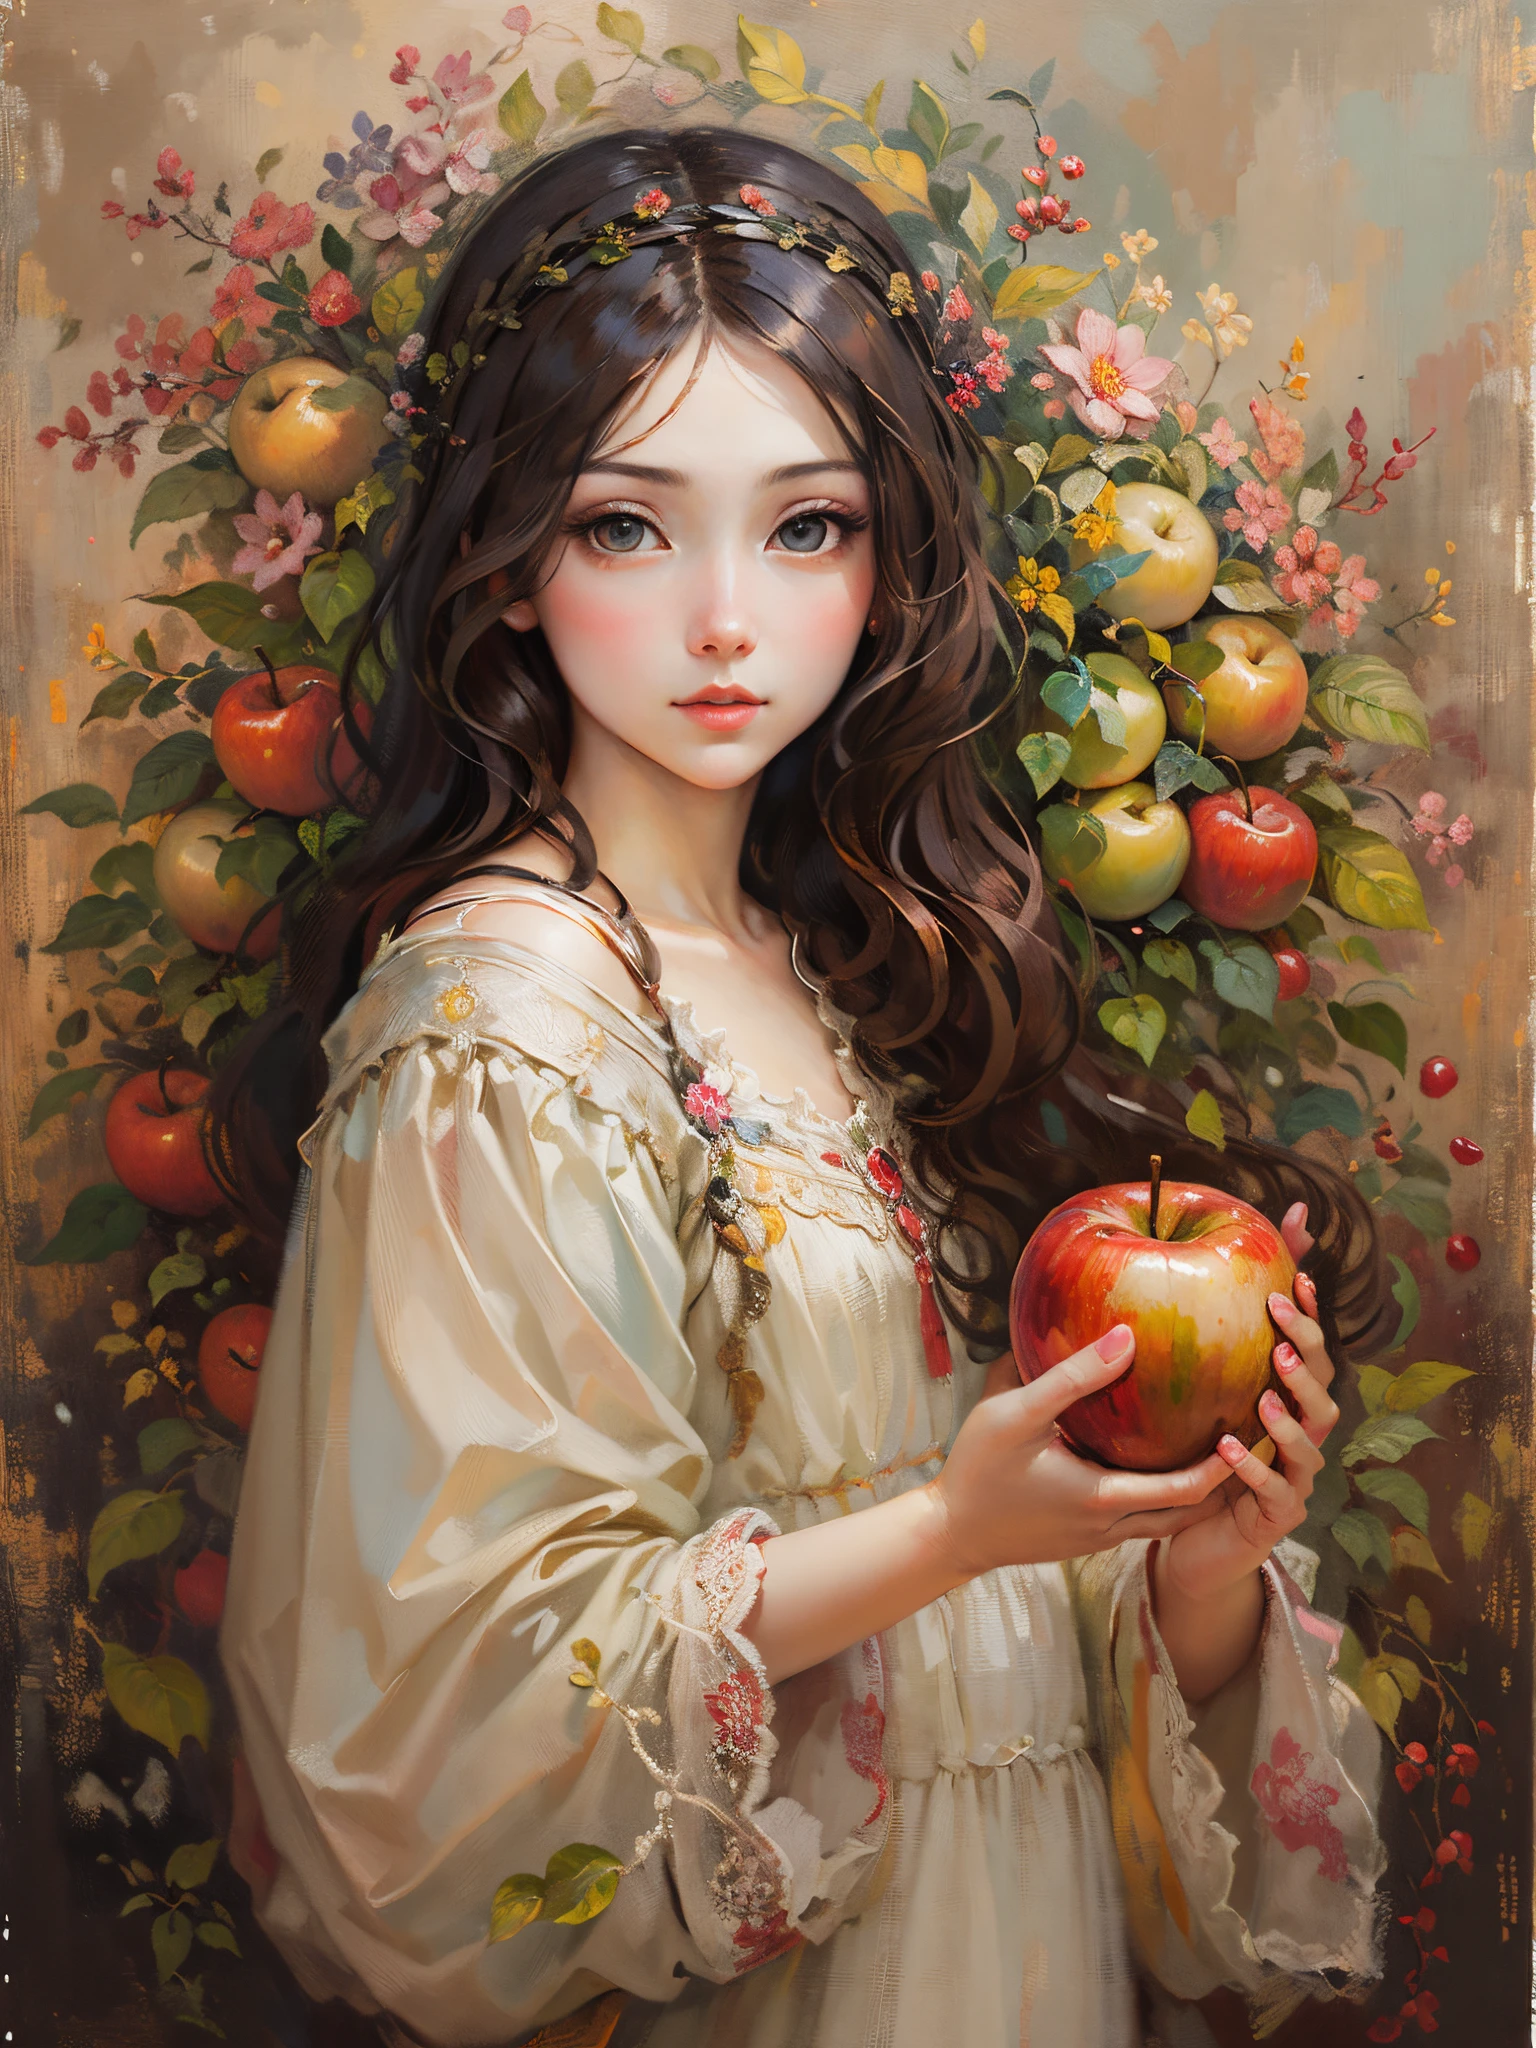 一幅油画，达芬奇艺术风格。苹果和美丽的女孩, Guviz 风格艺术品,，艺术创造力:1.37,甜的，奇妙又神奇，精美的